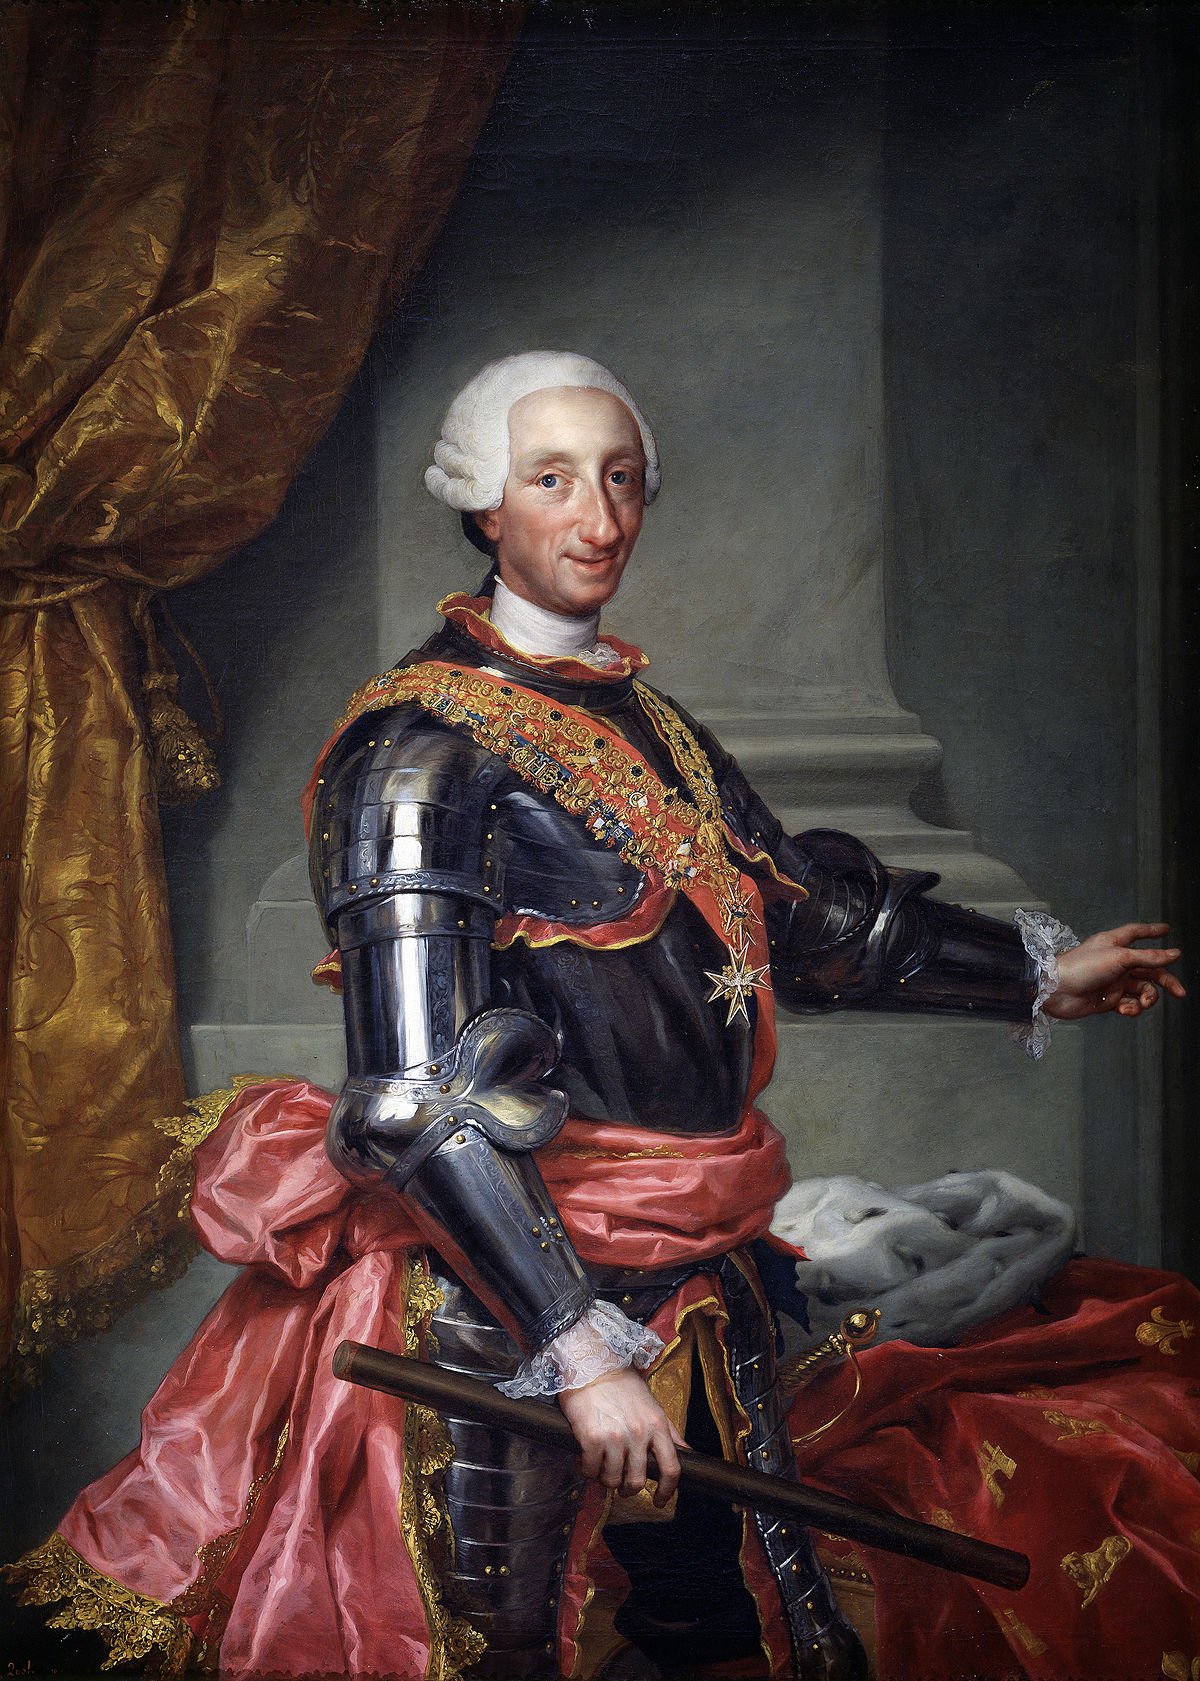 La imatge de Carles III (amb porra) rere Felip VI encén les xarxes